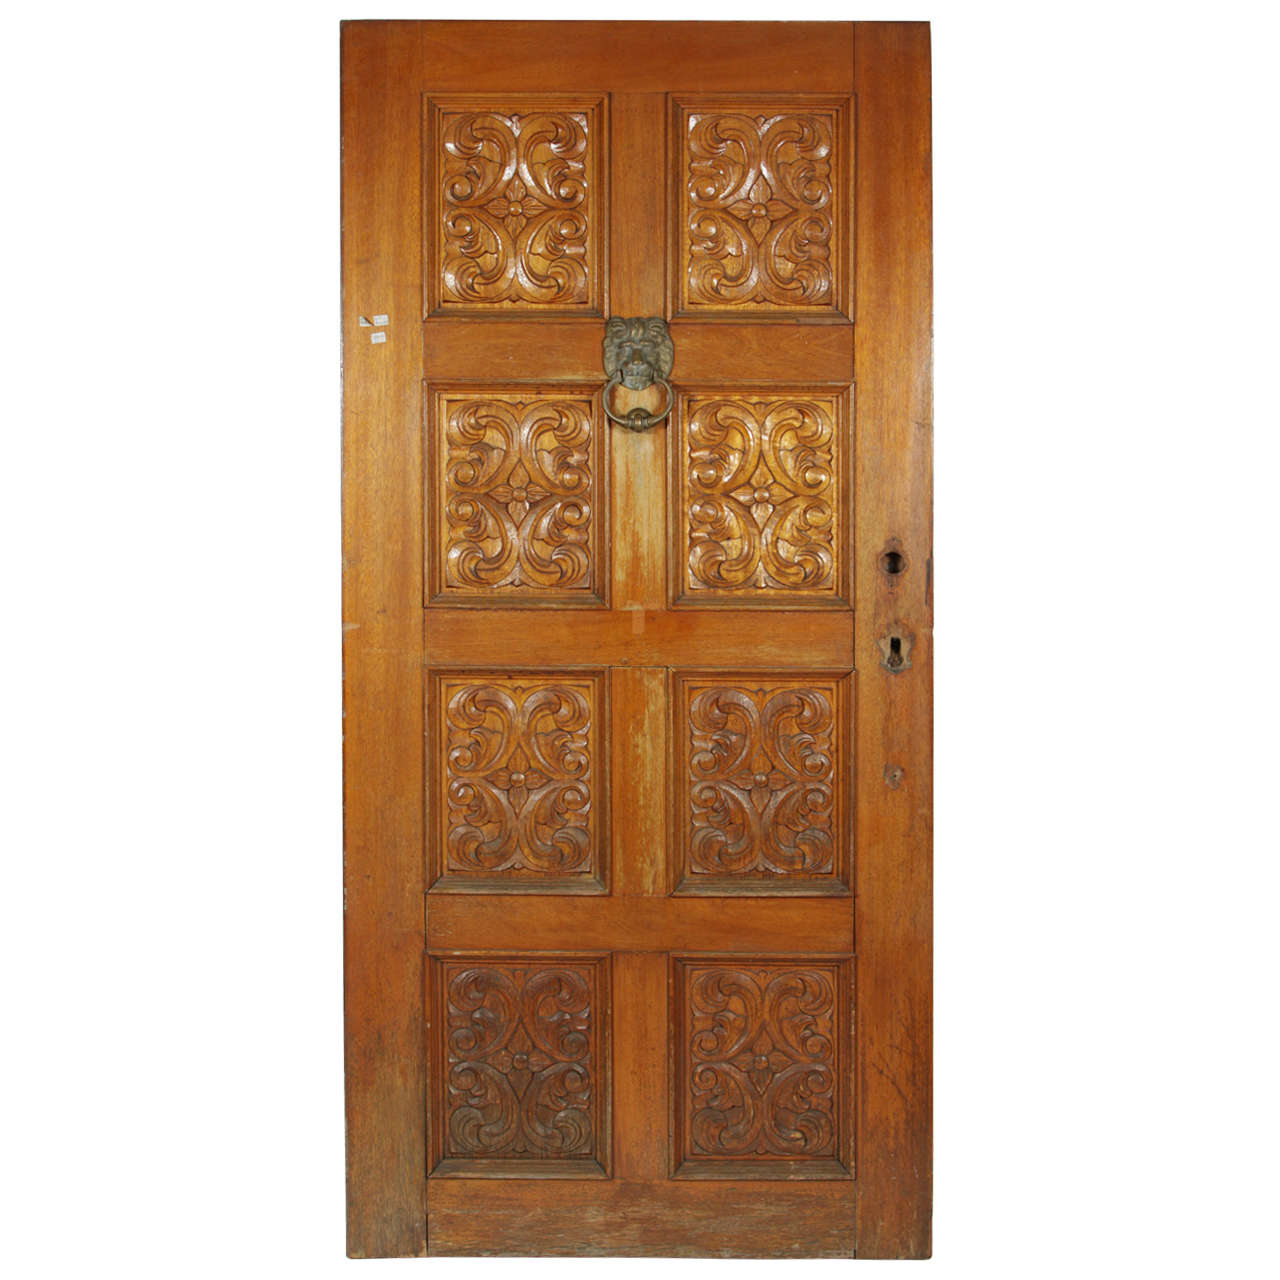 Carved Wooden Spanish Style Entry Door with Bronze Doorknocker